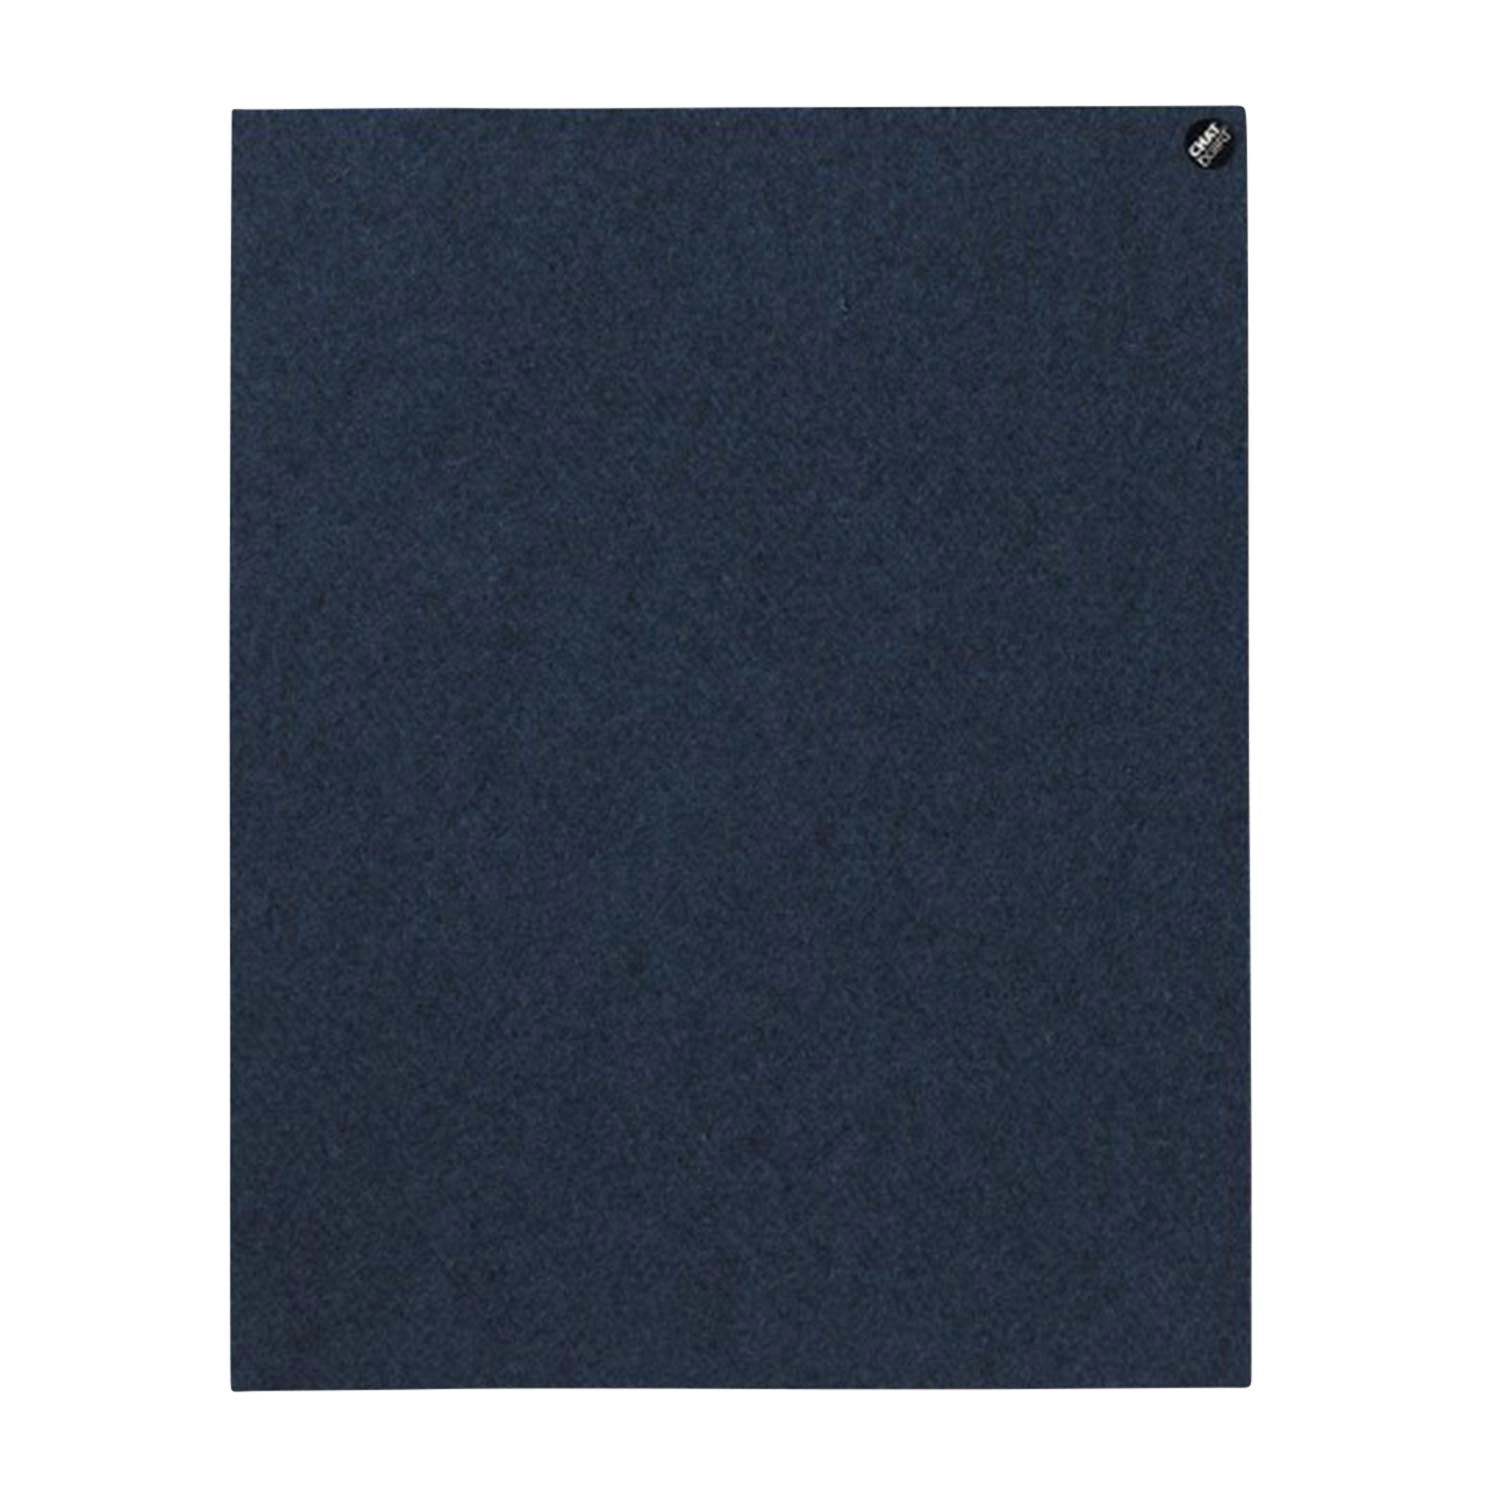 BuzziFelt Pinnwand, Grösse 80 x 50 cm, Ausrichtung vertikal, Buzzifelt (Filz) 60 light blue von Chat Board